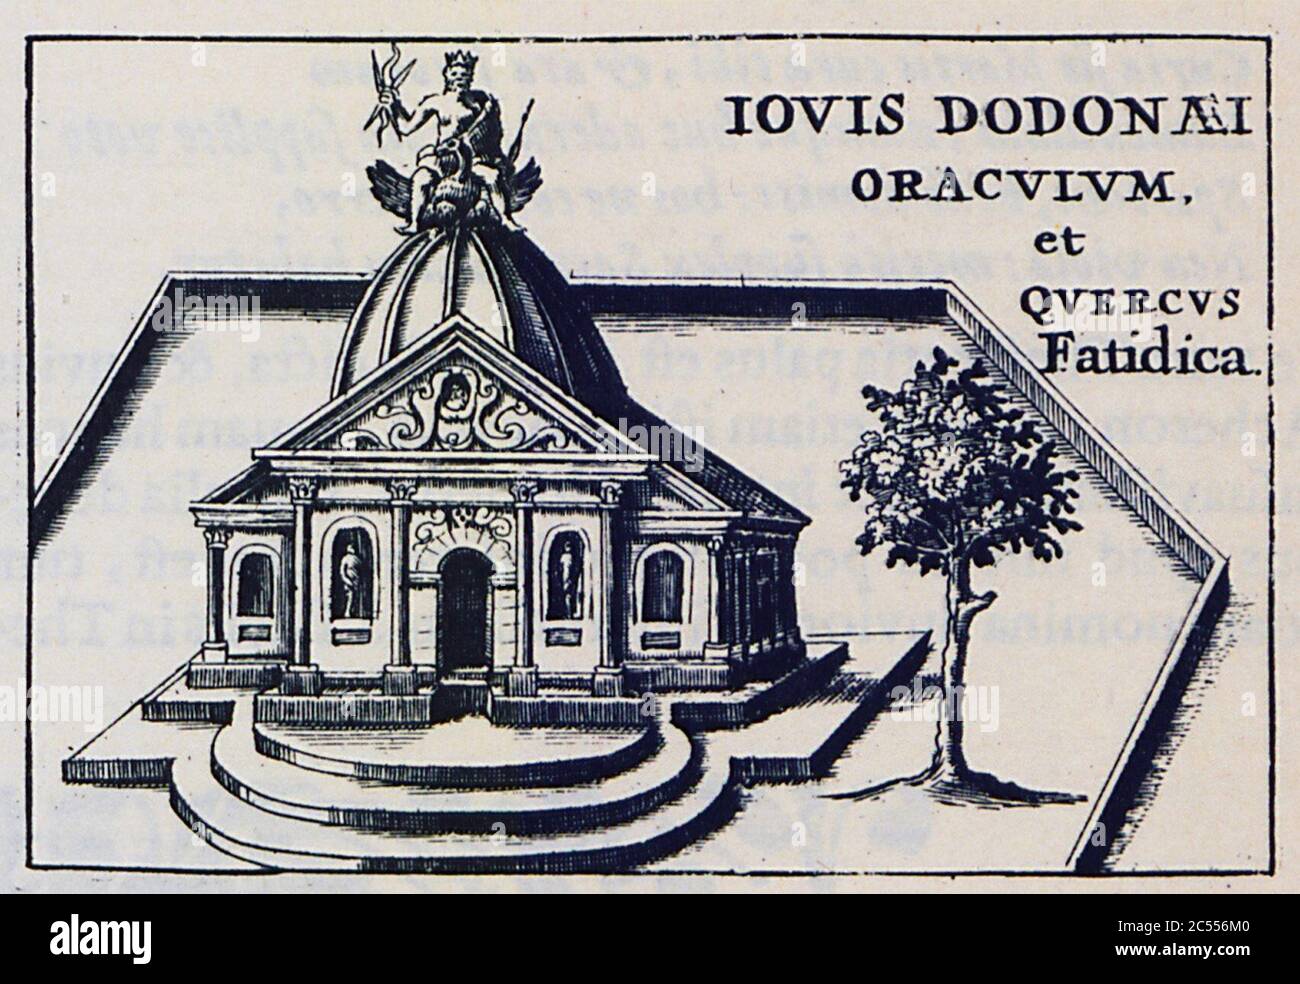 Iovis Dodonaei oraculum, et Querquus Fatidica - Laurenberg Johann - 1661. Stock Photo